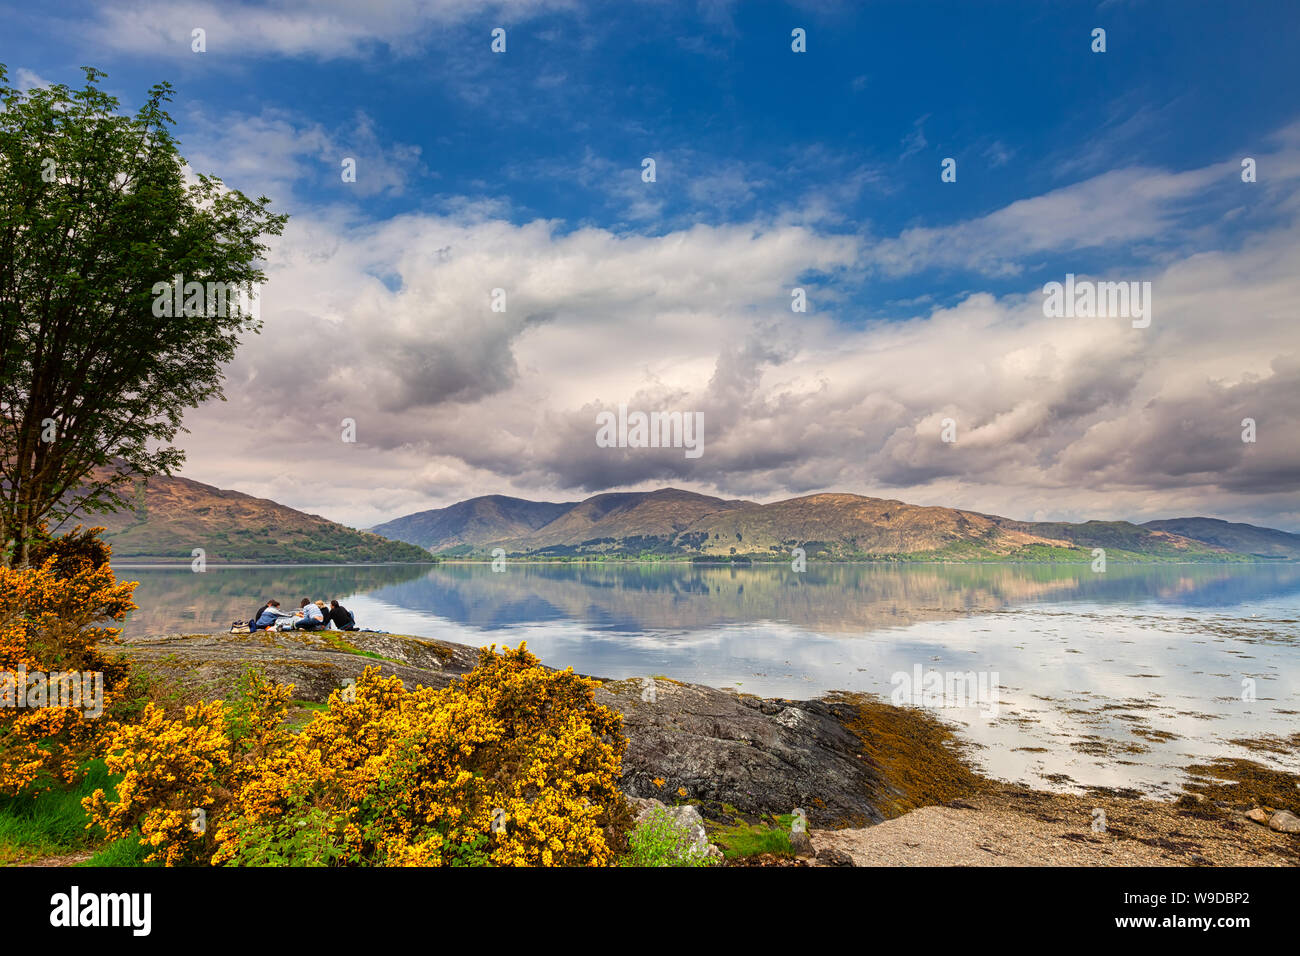 Menschen mit einem entspannenden Picknick am Loch Linnhe in den Highlands an einem Frühlingstag - Westküste Schottland - Reisen Bild Stockfoto